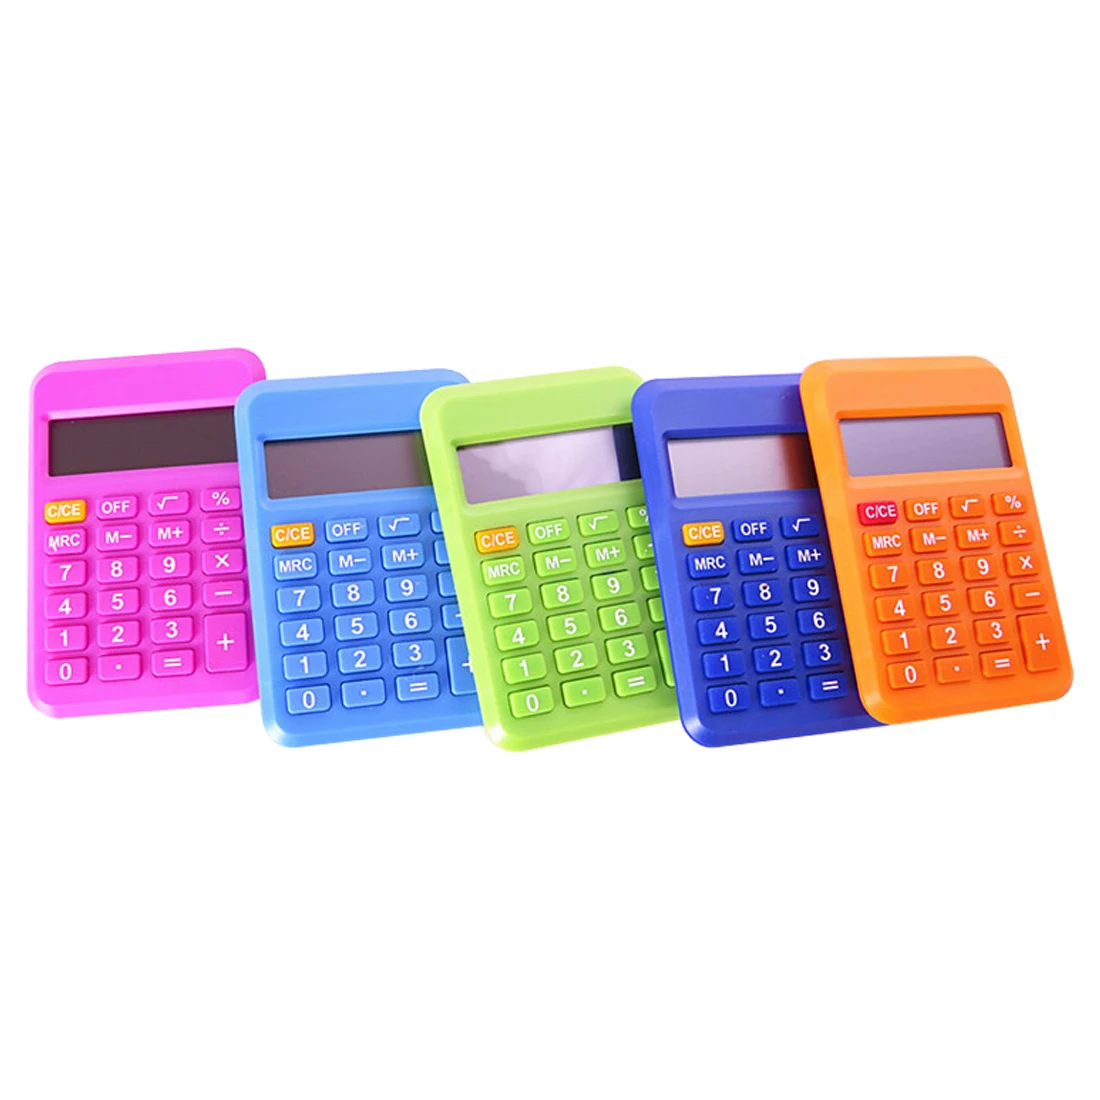 NOYOKERE цветной студенческий мини-электронный калькулятор конфетного цвета расчетные офисные принадлежности подарок 9*6 мм Размер случайный цвет